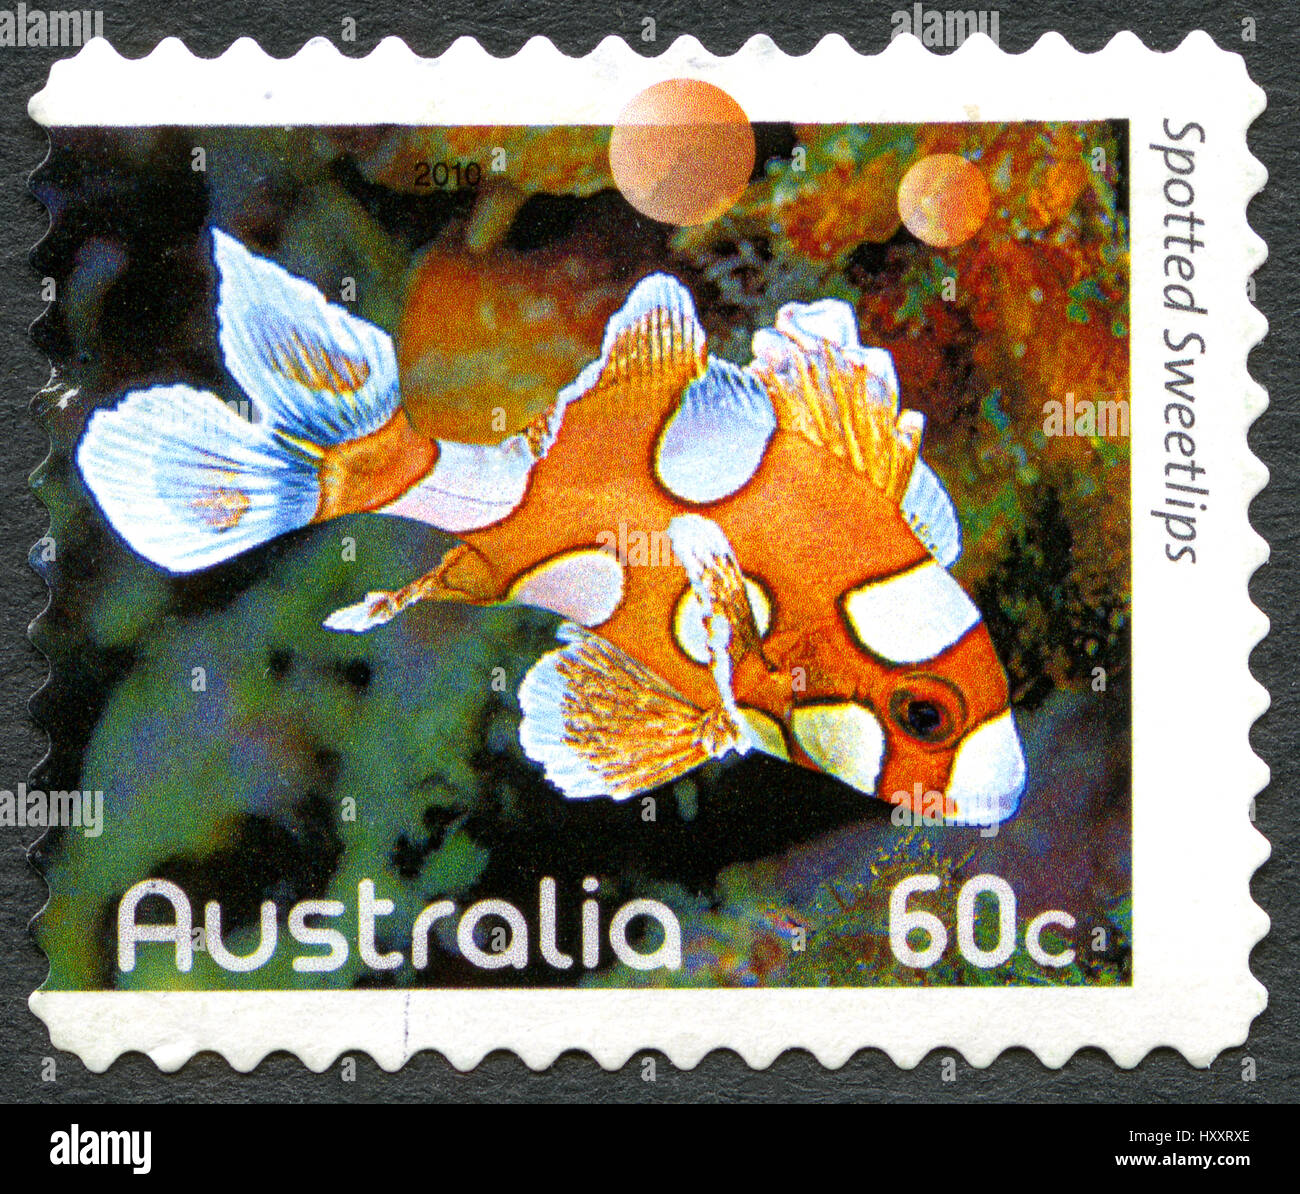 Australien - ca. 2010: Eine gebrauchte Briefmarke aus Australien, ein Bild eines Fisches entdeckt Süßlippen, ca. 2010. Stockfoto